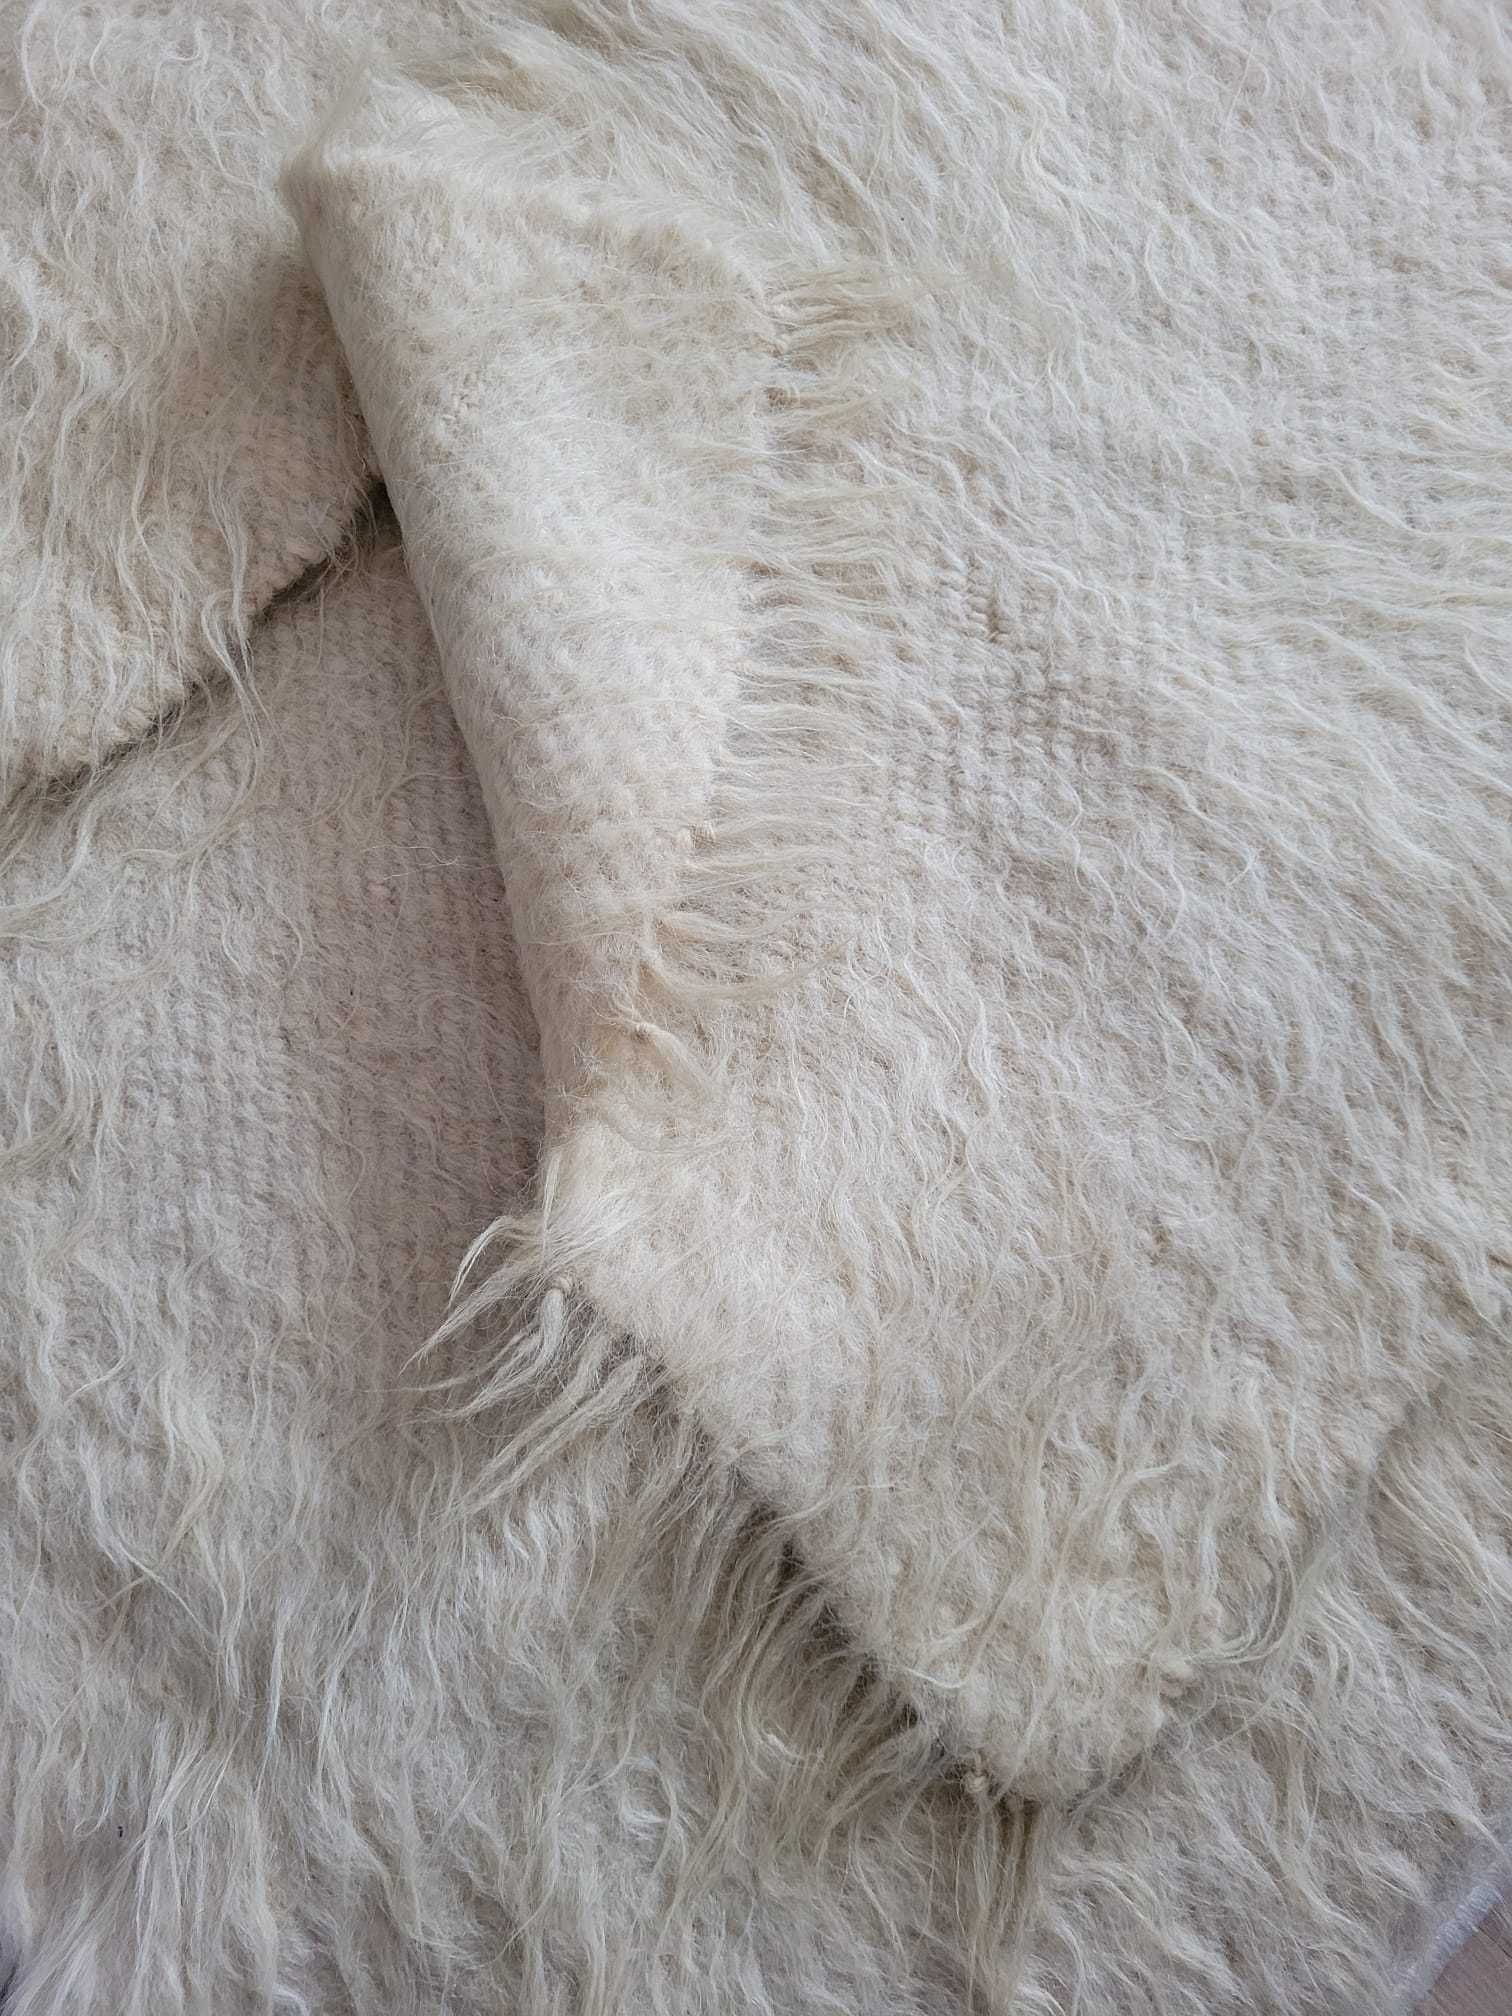 Cerga traditionala din lana (lipideu)